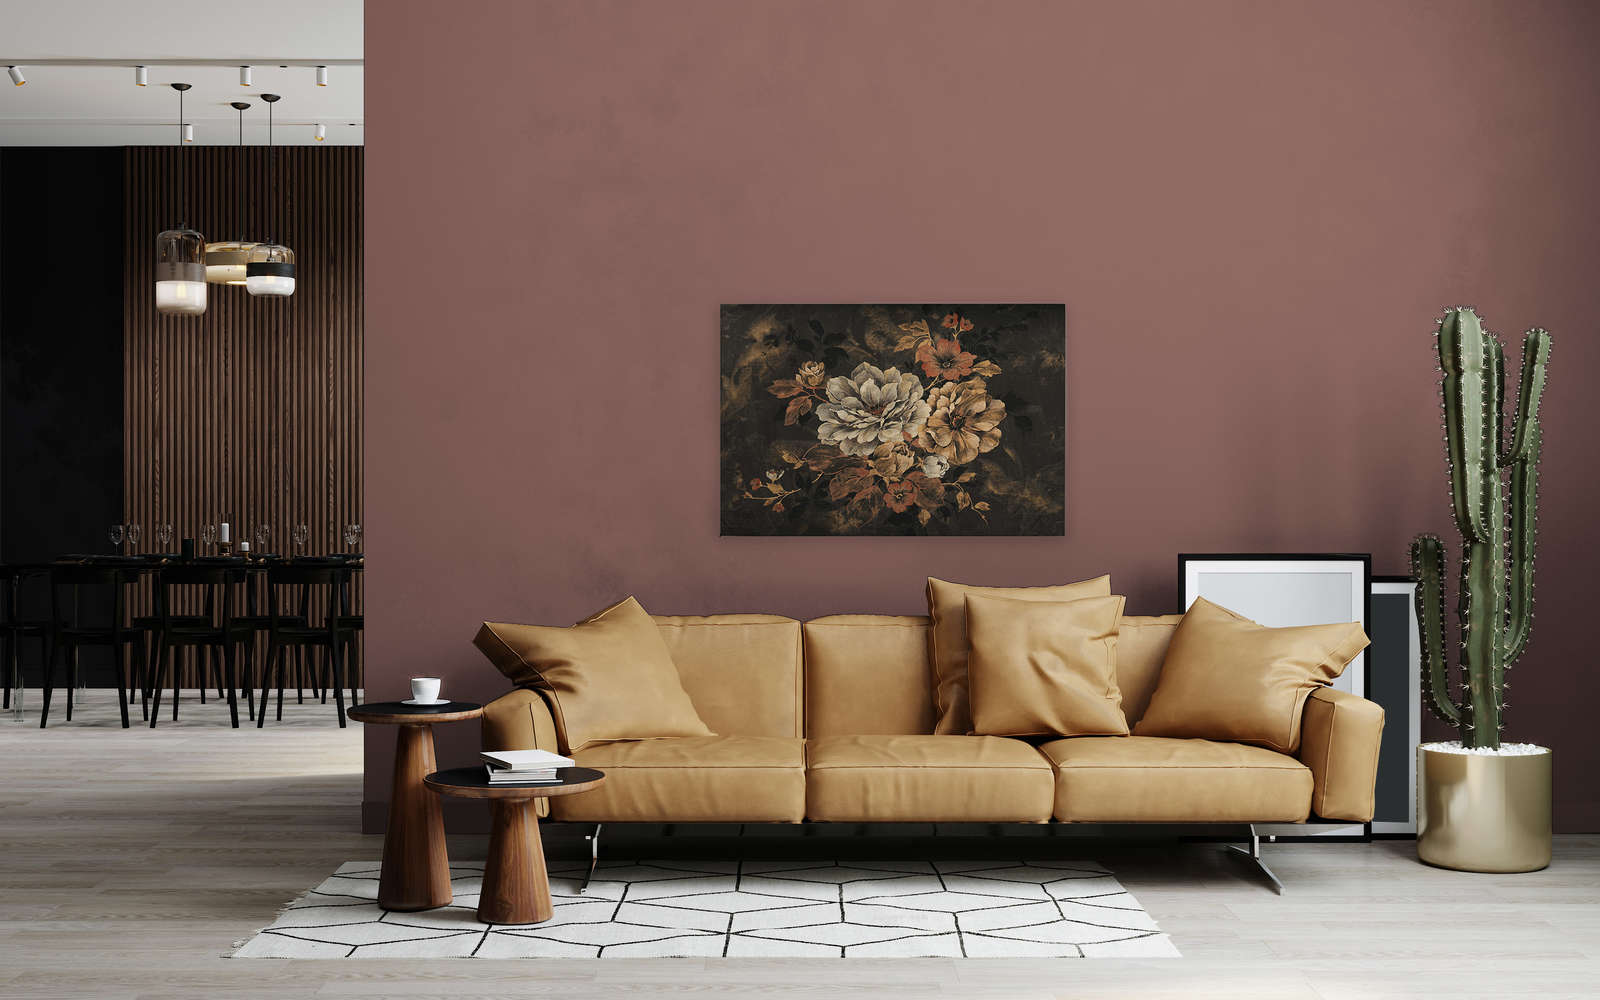             Quadro su tela con fiori, pittura a olio in stile vintage - 1,20 m x 0,80 m
        